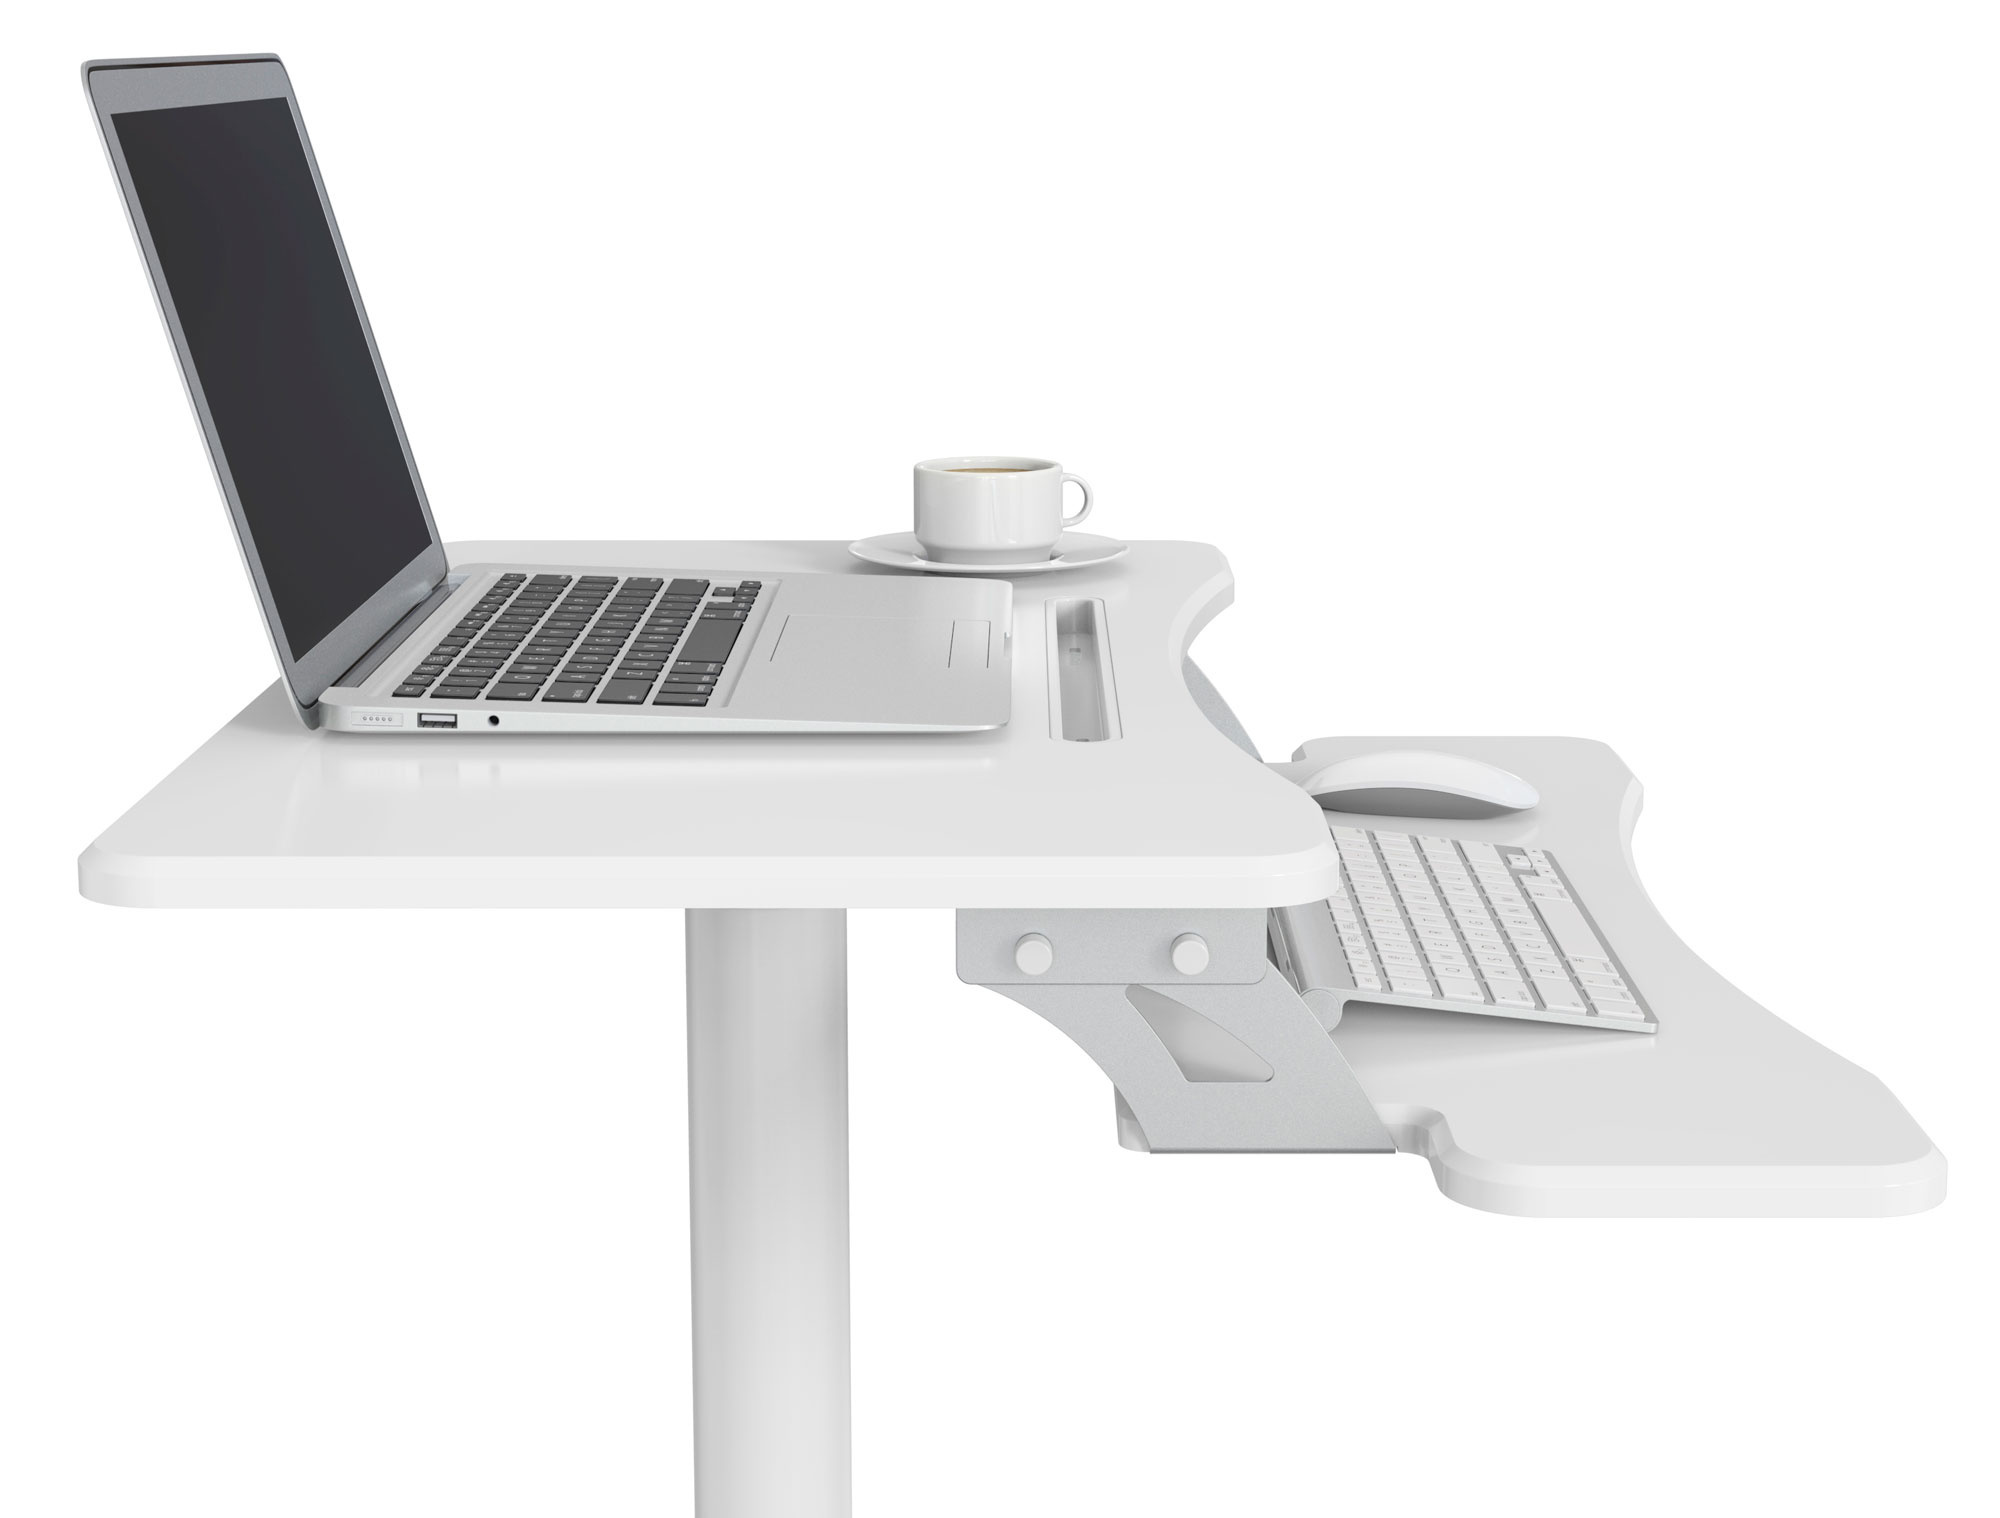 Стол для ноутбука Cactus VM-FDS108 столешница МДФ белый 71x39.2x110см (CS-FDS108WWT) 